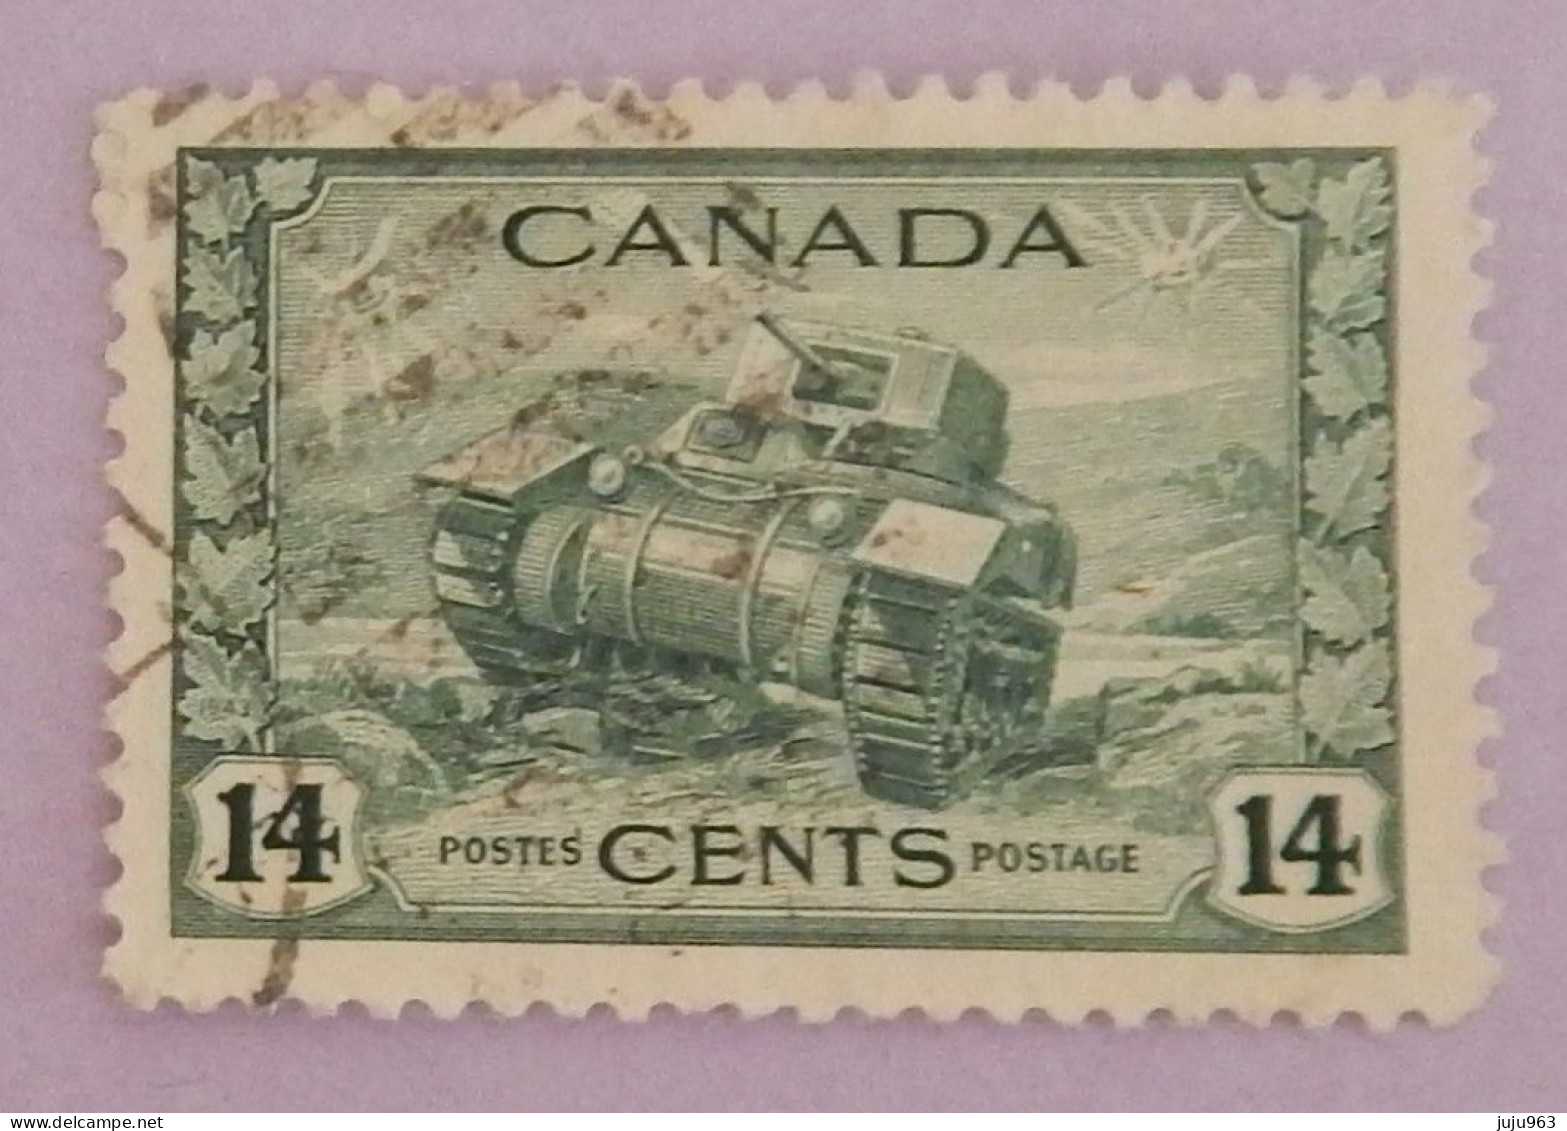 CANADA YT 215 OBLITÉRÉ "CHAR D ASSAUT" ANNÉES 1943/1948 - Oblitérés